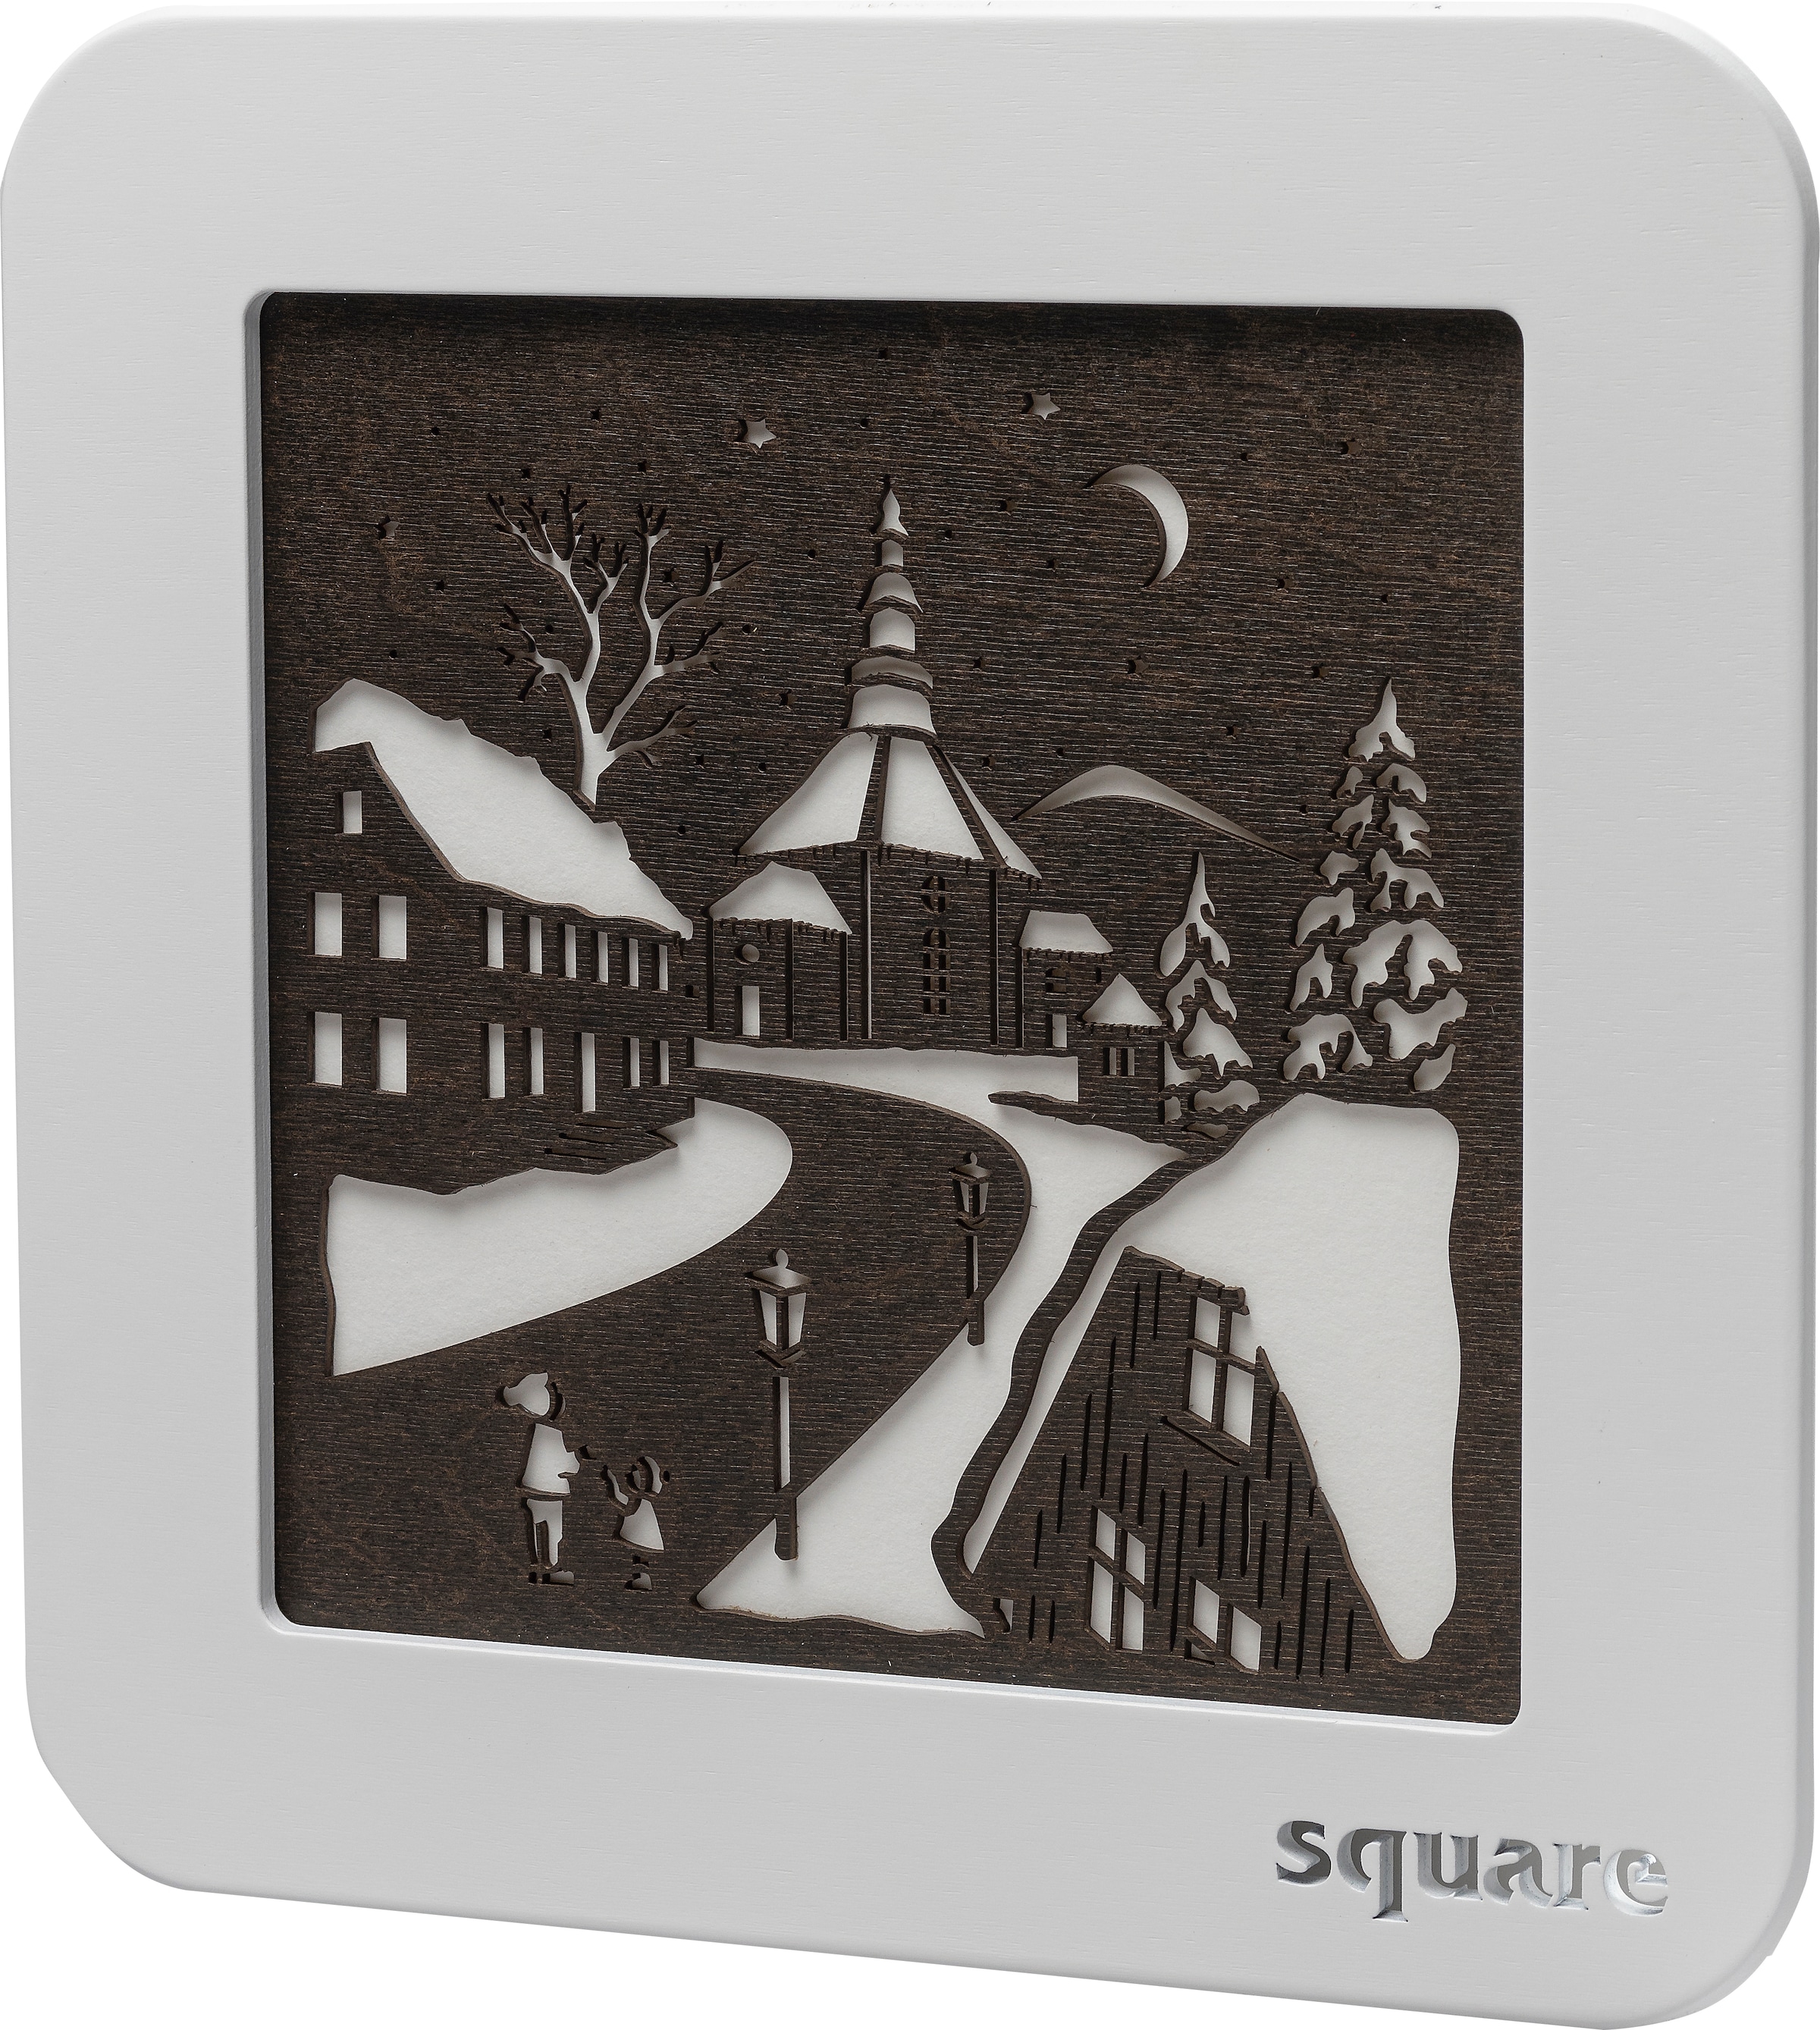 LED-Bild »Square - Wandbild Seiffen, Weihnachtsdeko«, (1 St.), mit Timer, einseitiges...